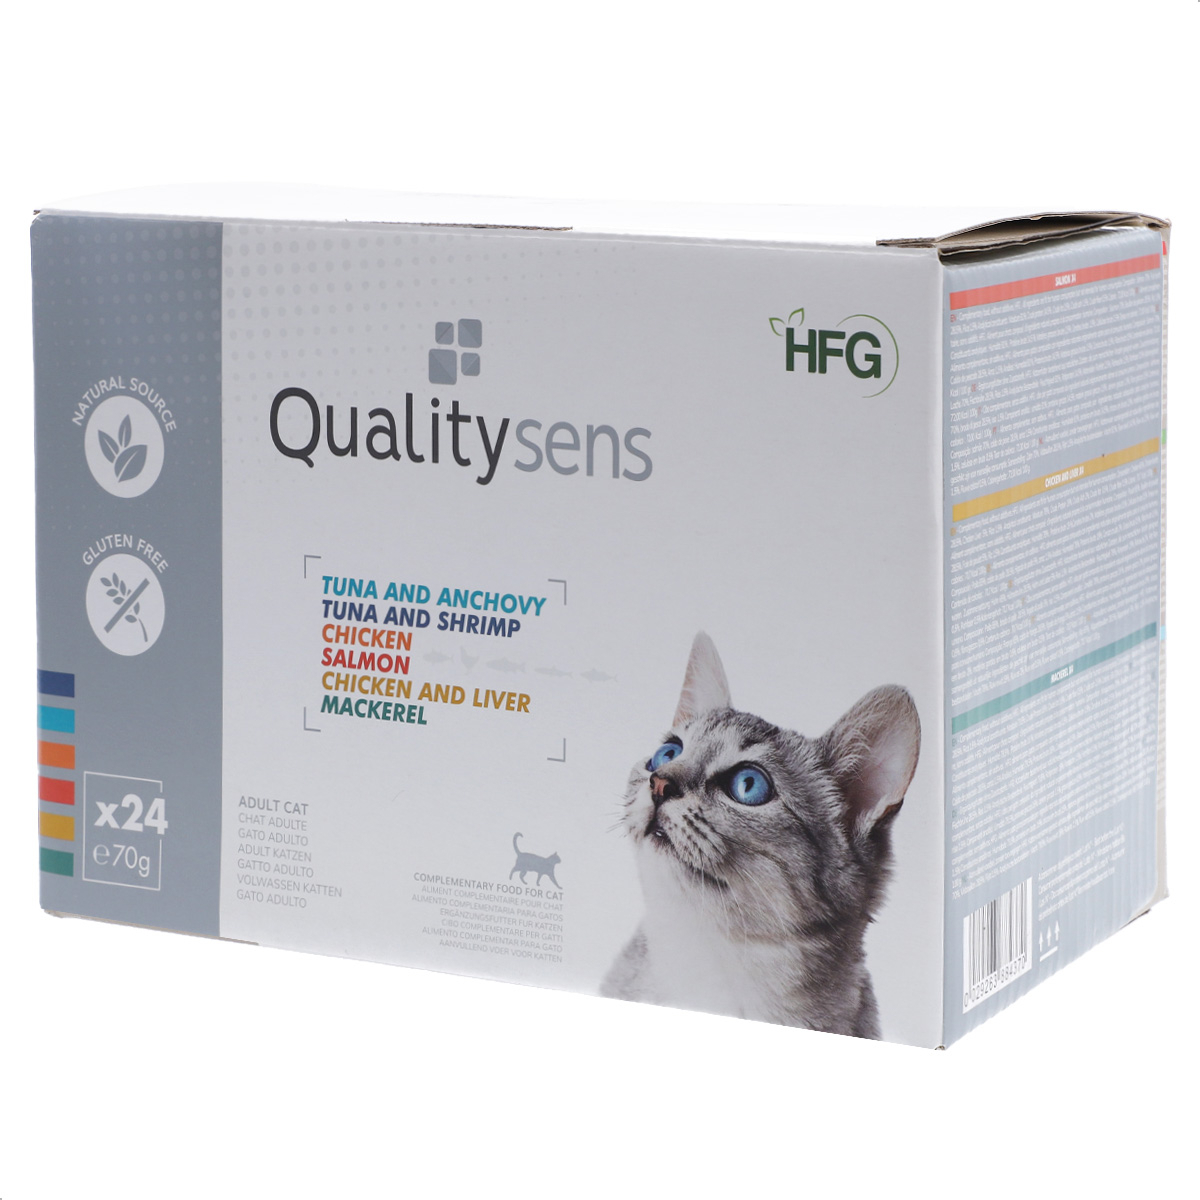 QUALITY SENS HFG Multipack 6 Comida húmeda 100% natural para Gatos y